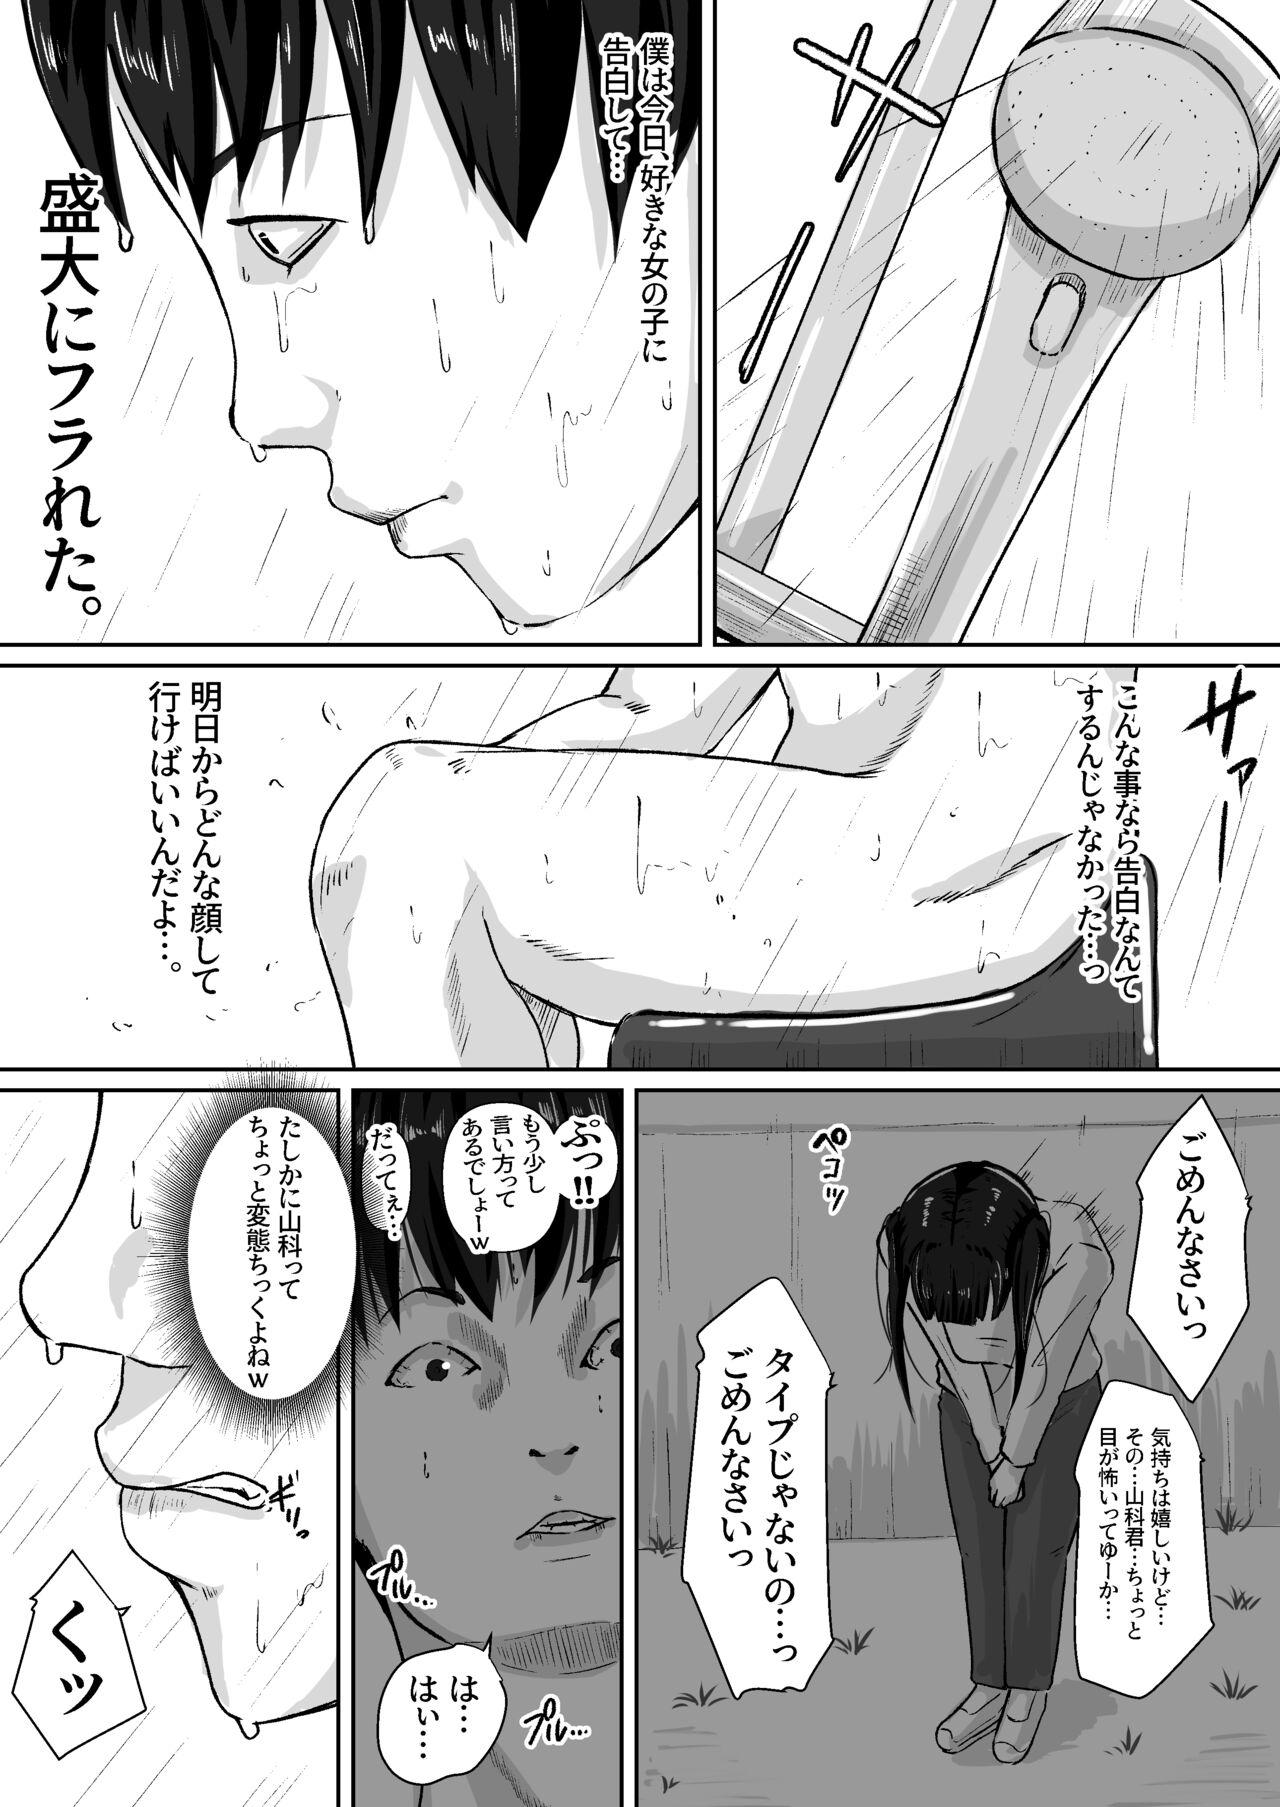 Gostoso Gomen, Kaa-san Otonashiiku Shite. - Original Finger - Page 5